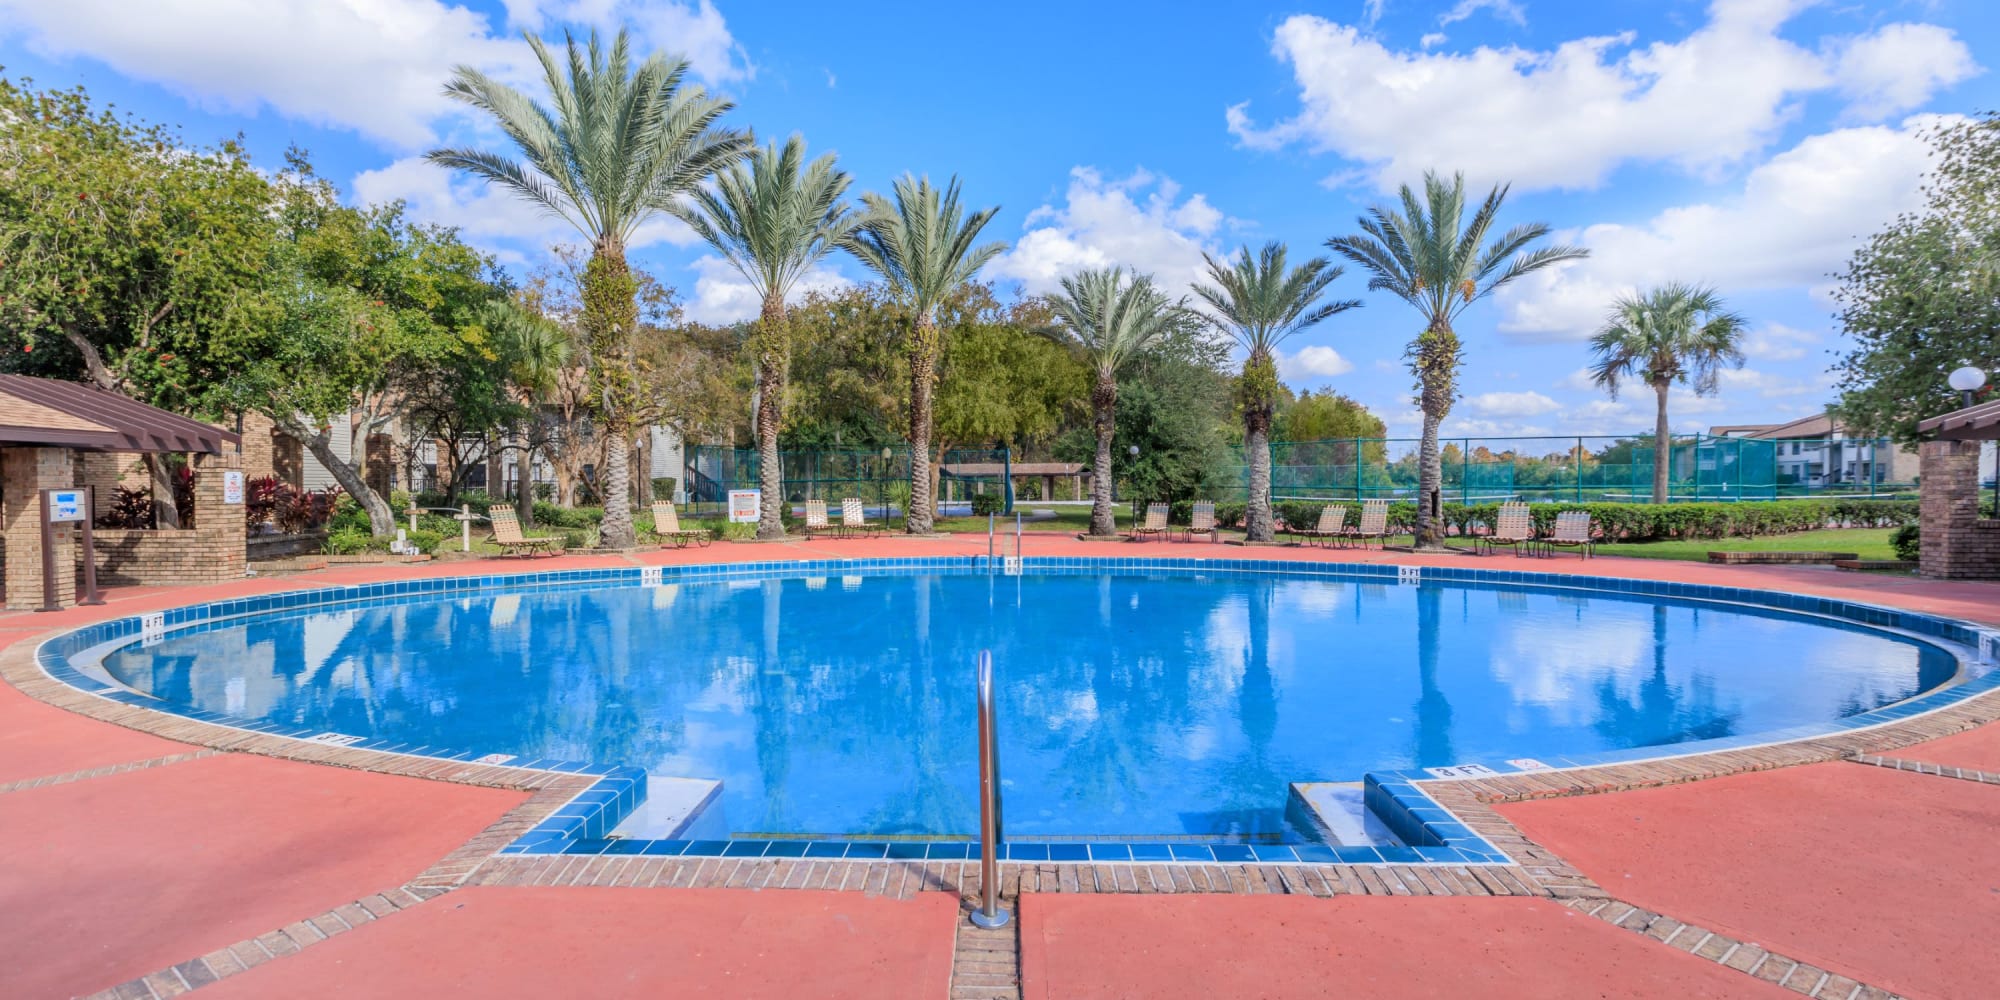 Swimming pool at Millenium Cove in Orlando, Florida